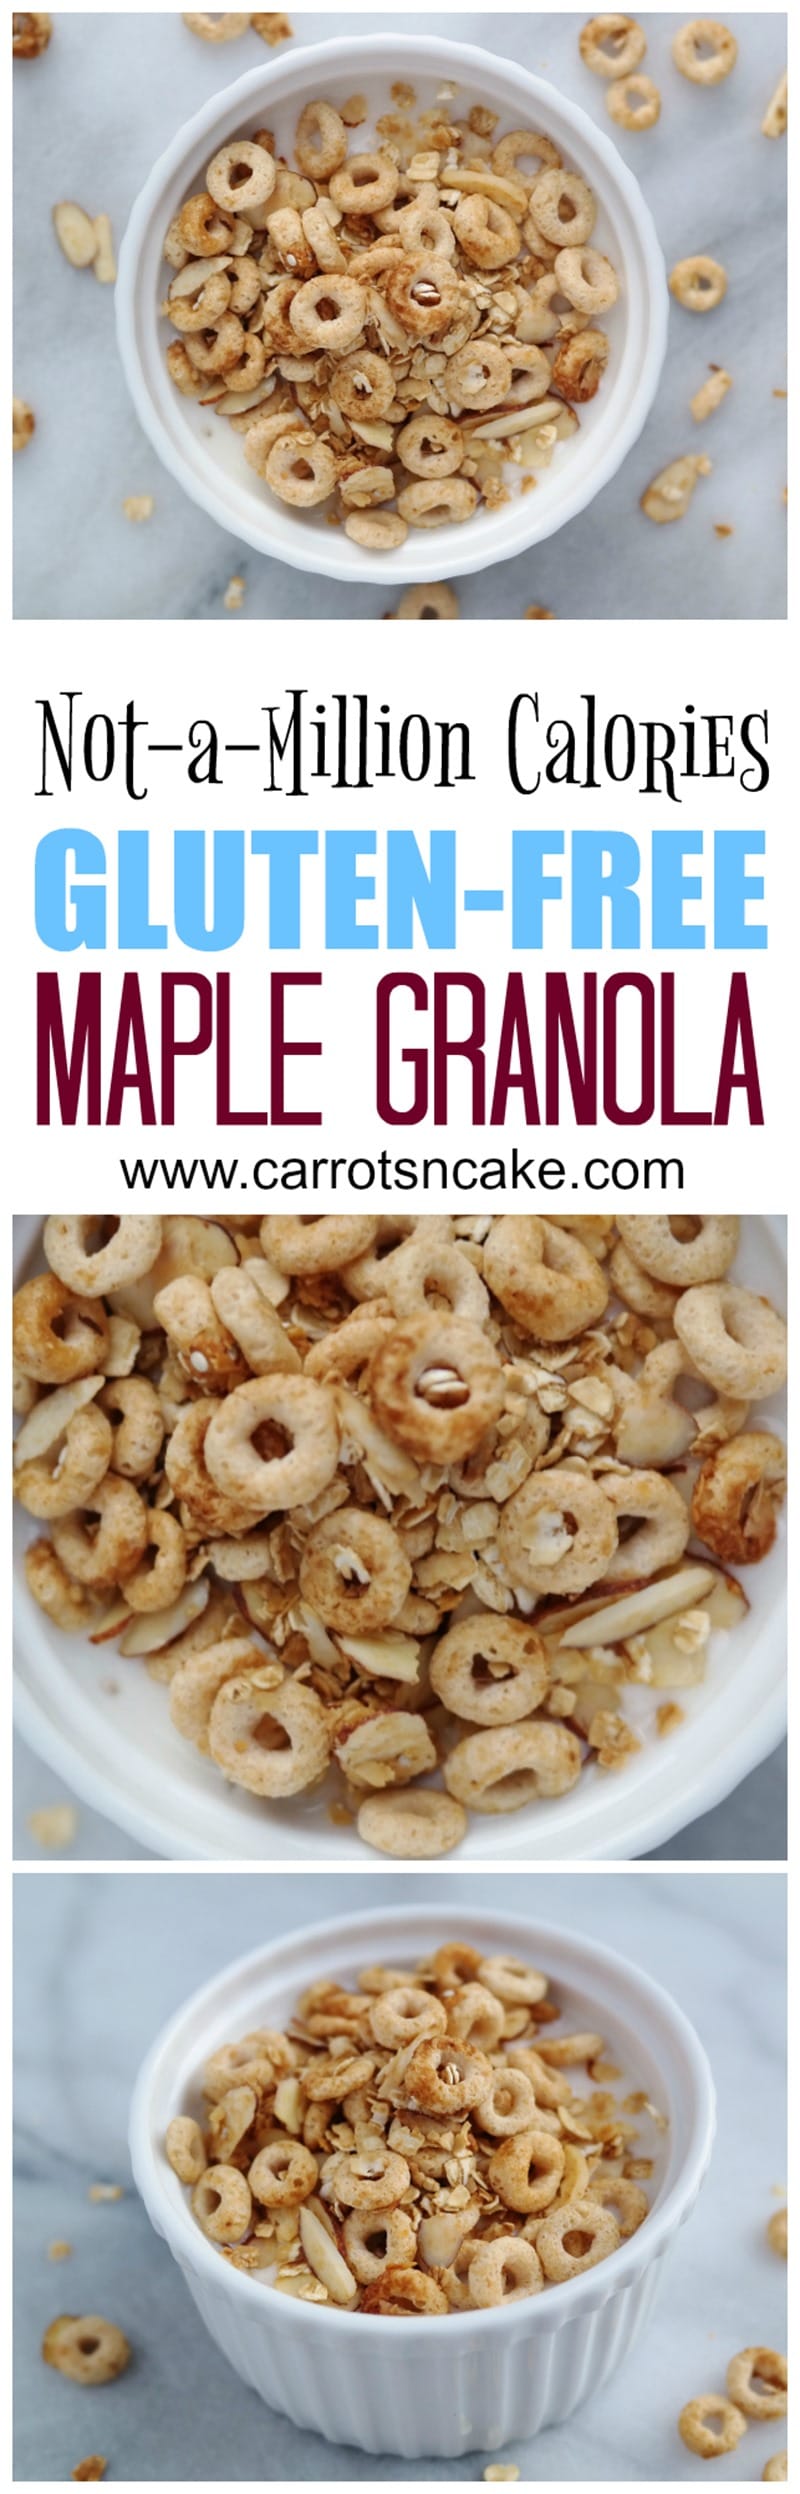 Easy Gluten-Free Maple Granola Recipe